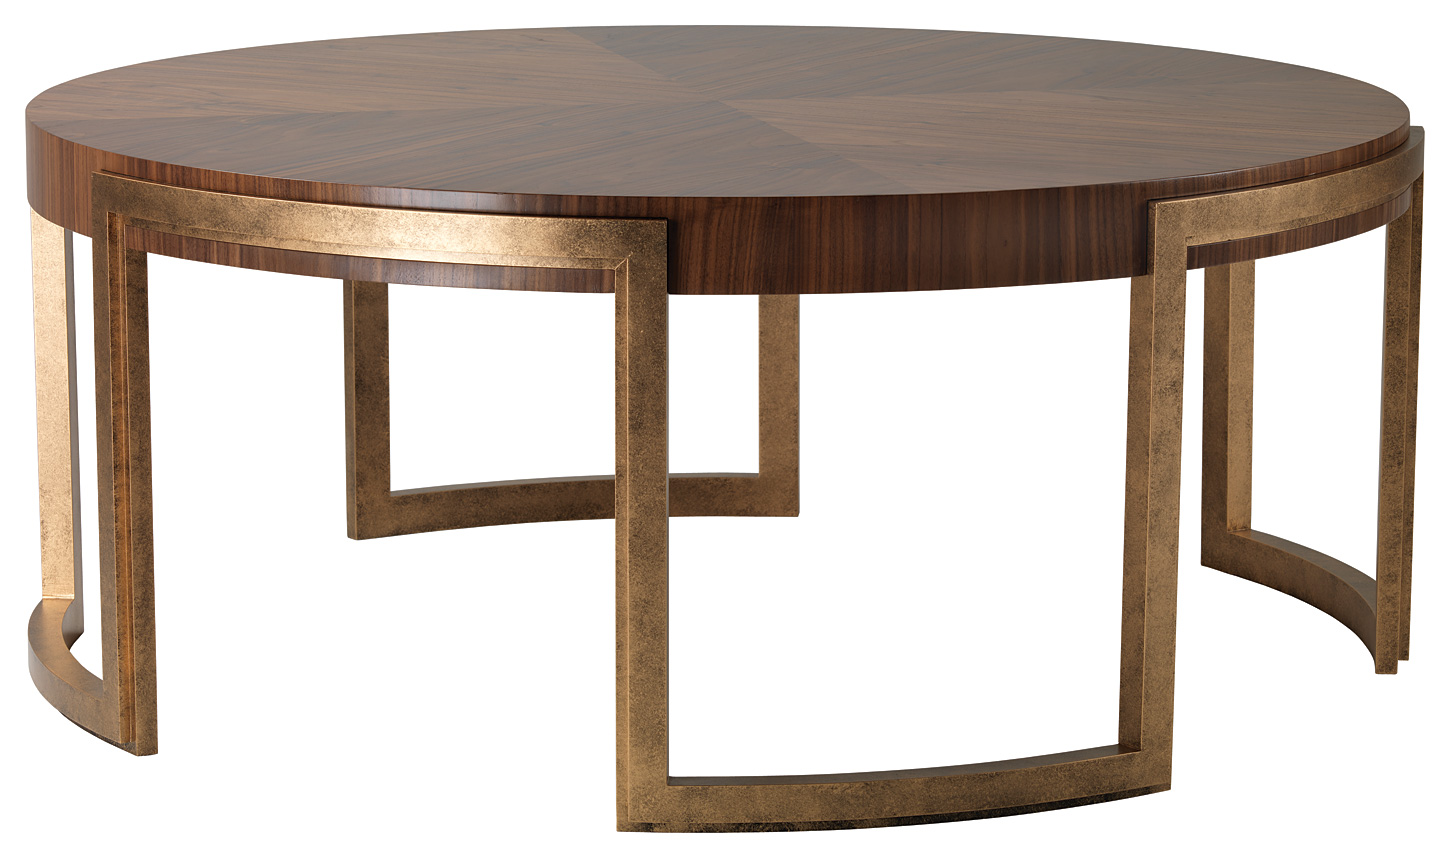 circular wooden table